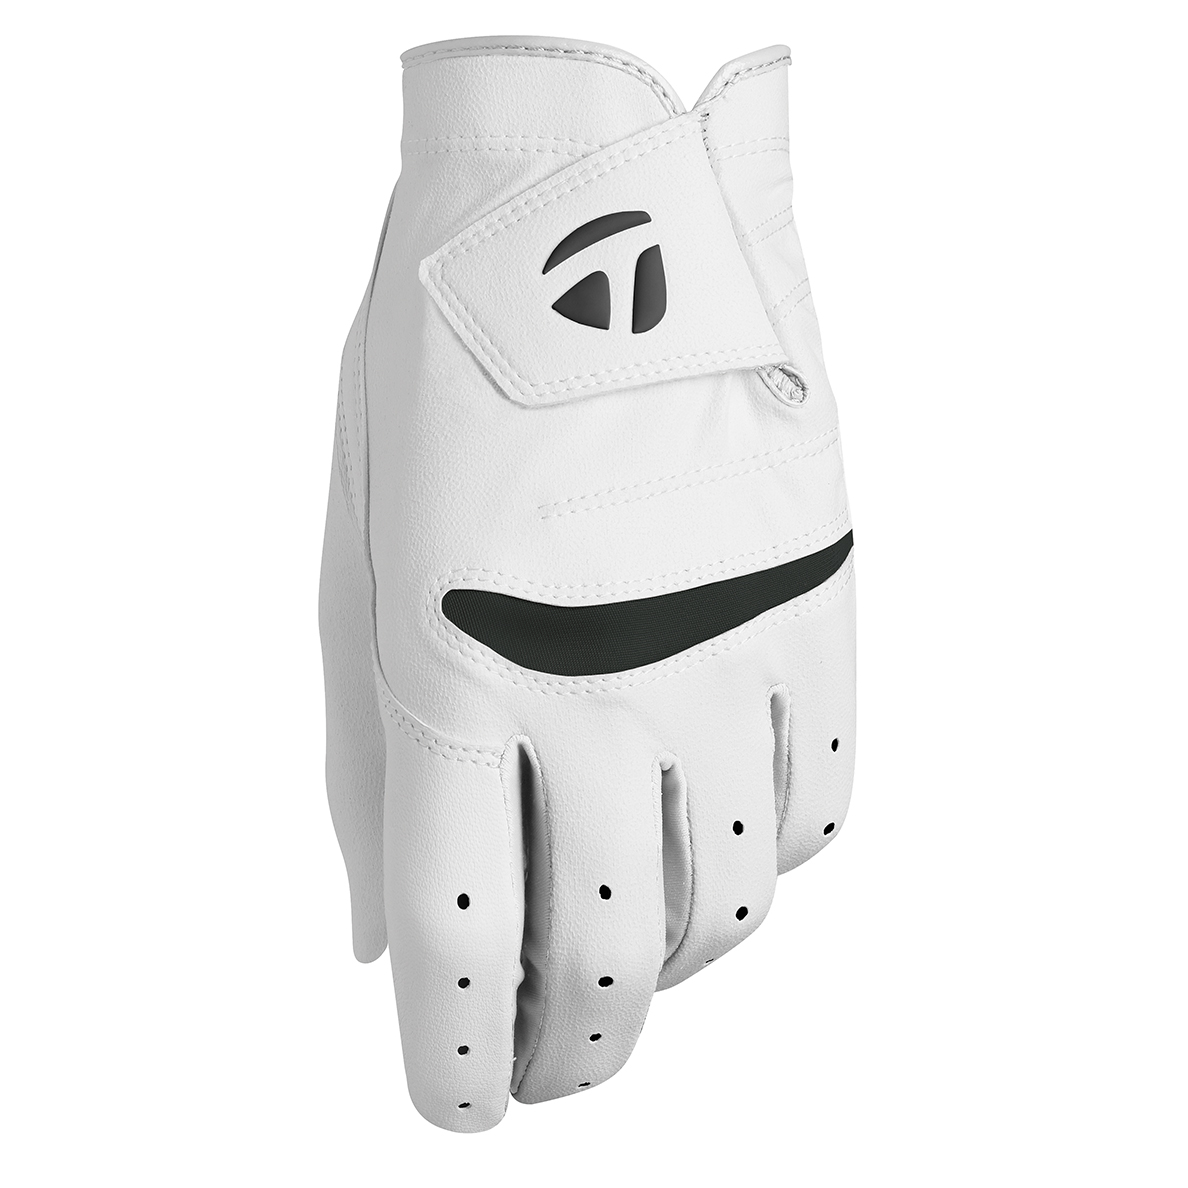 Junior Stratus Glove